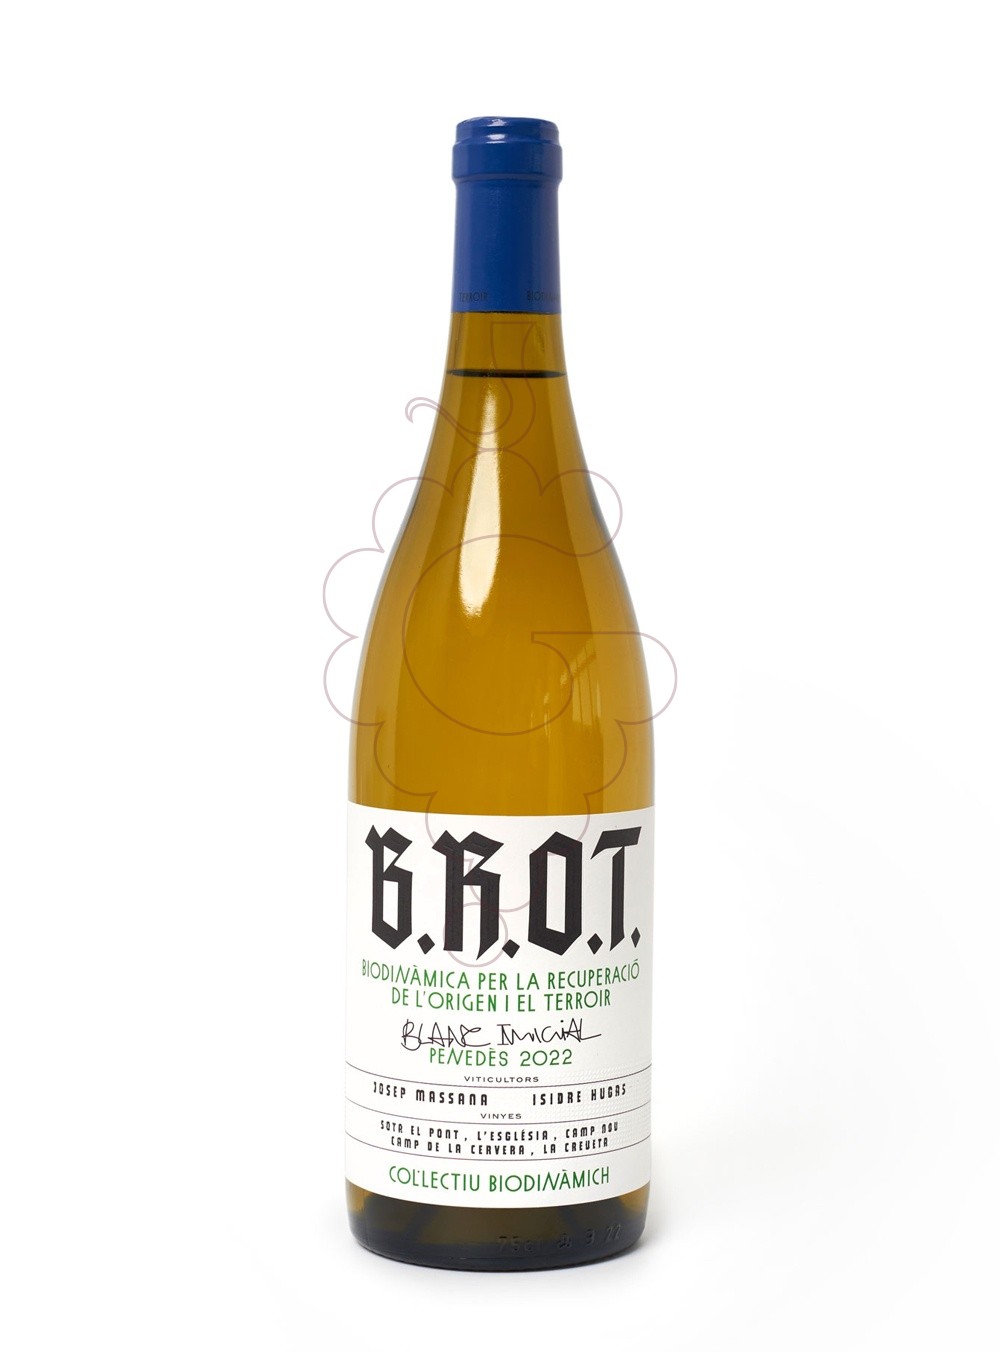 Foto B.R.O.T. Blanc Inicial vino blanco